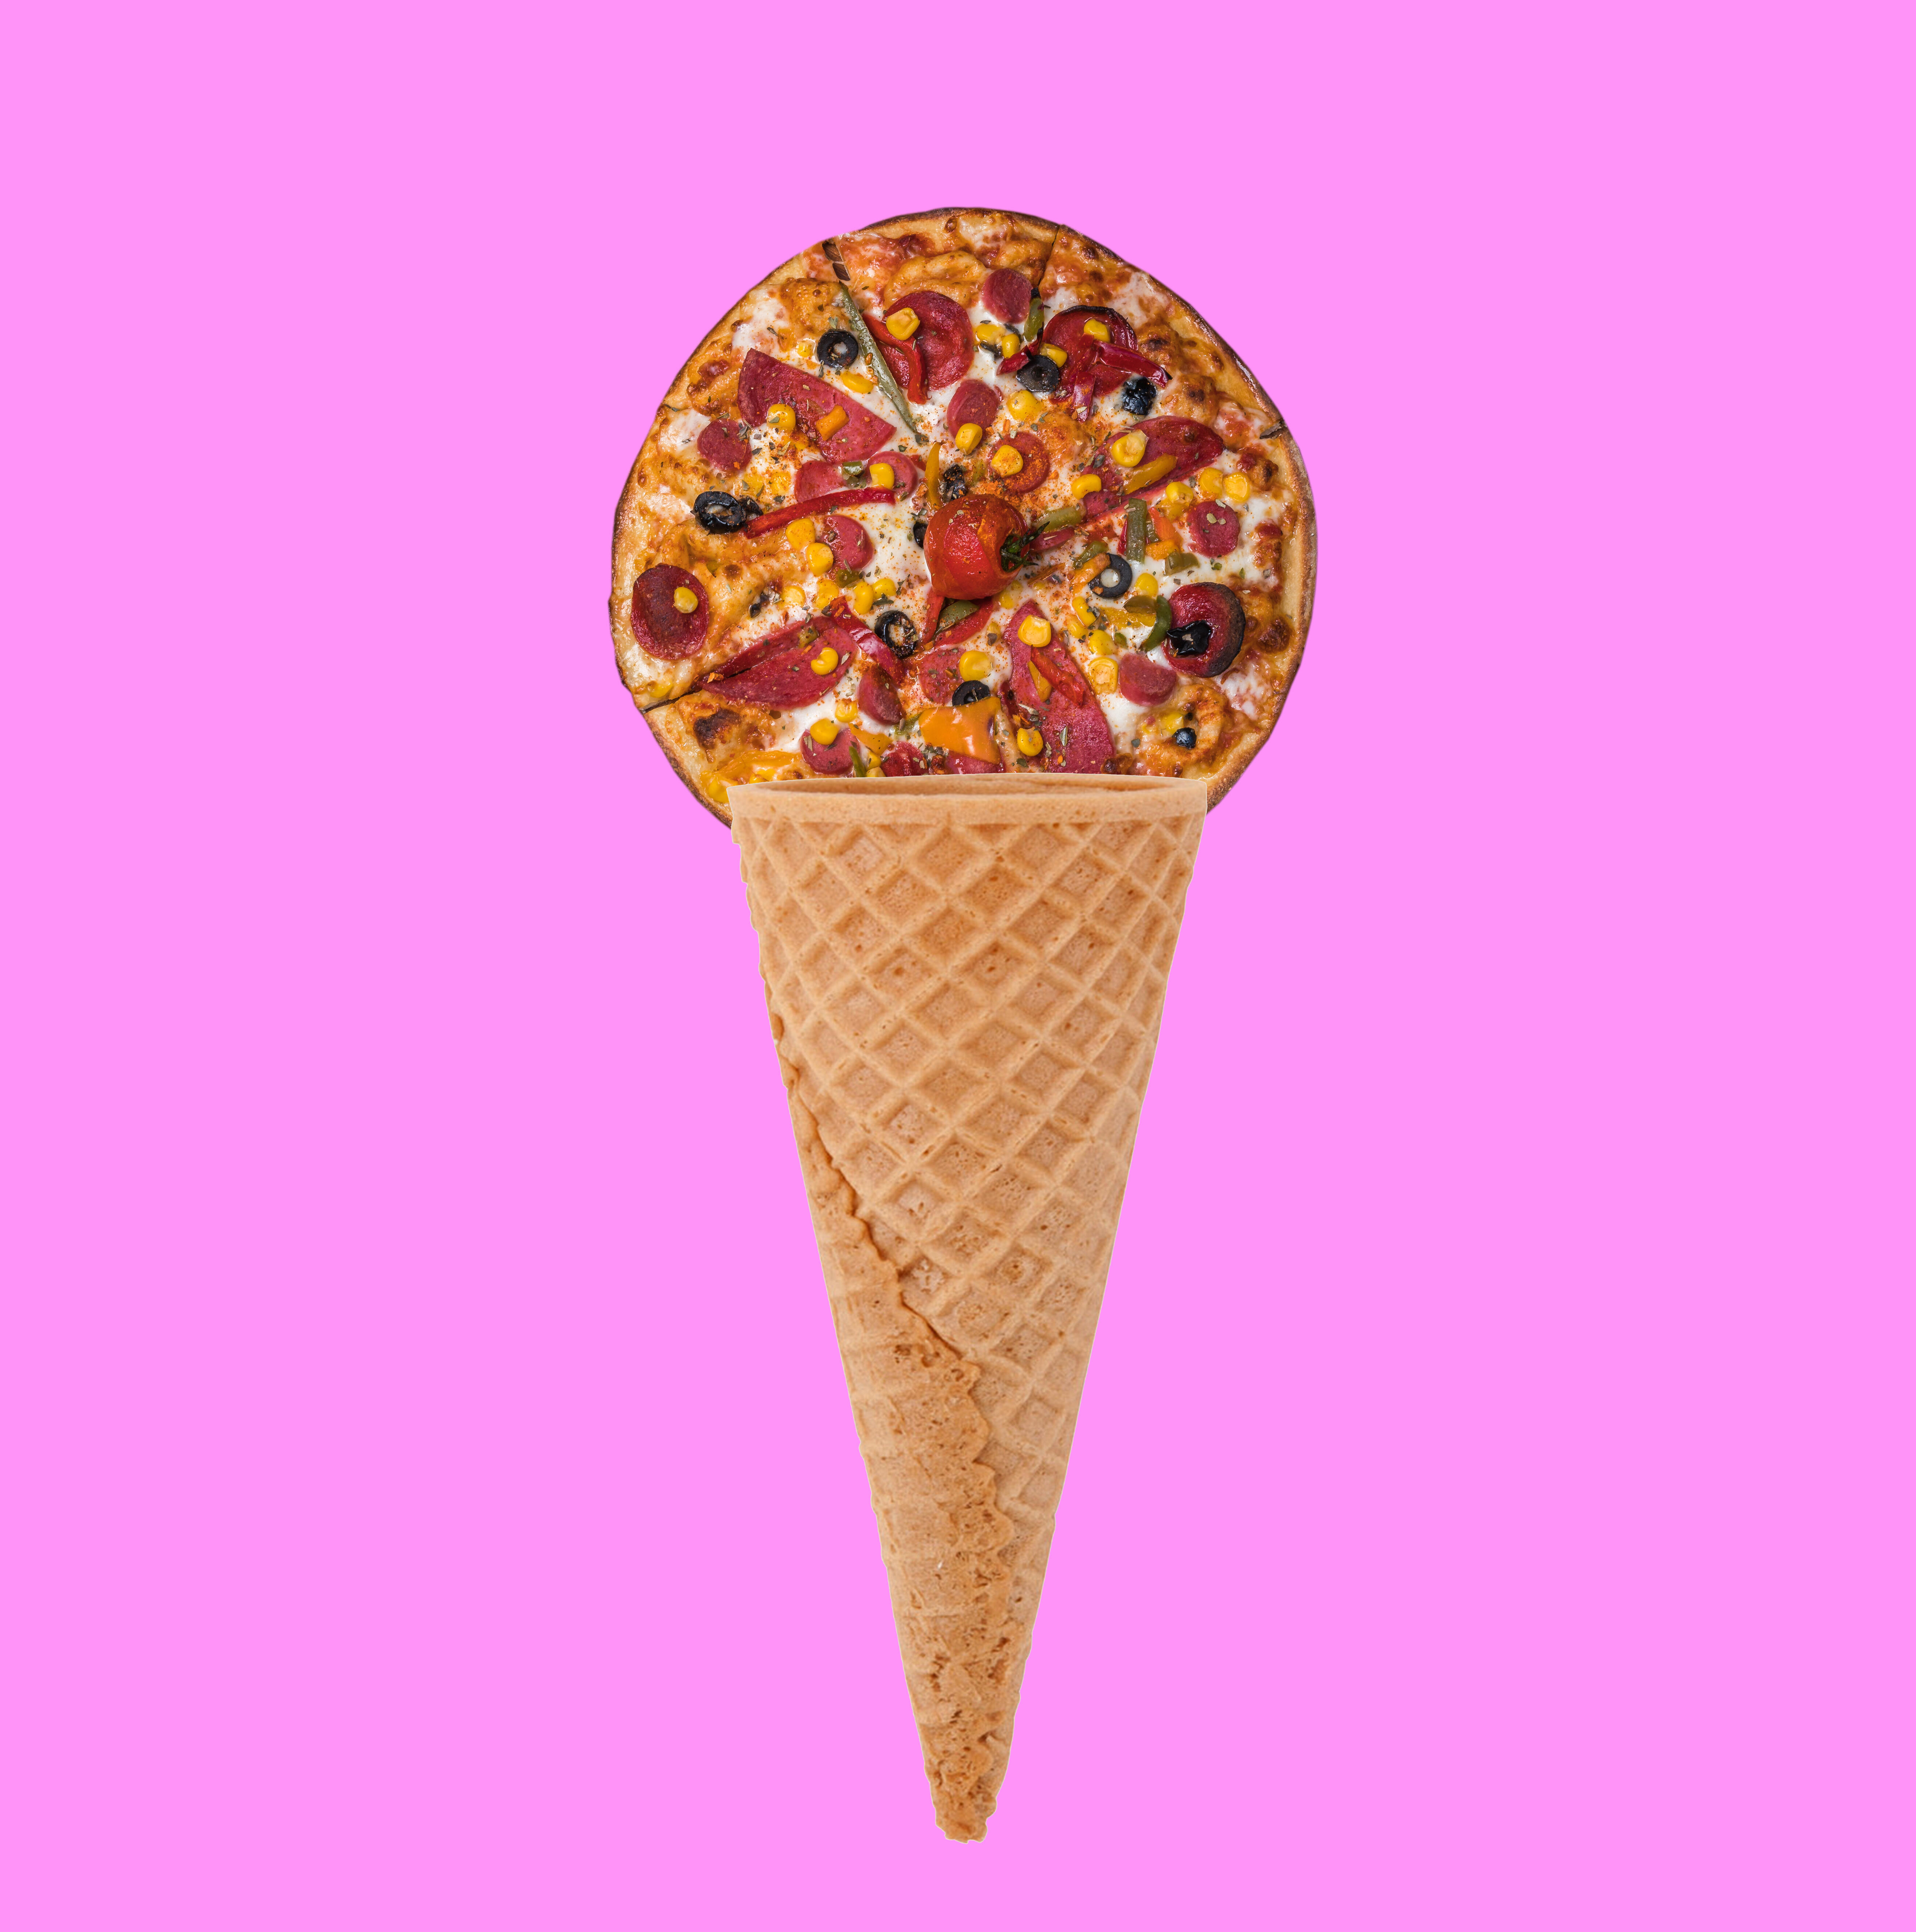 Walmart ice cream: Van Leeuwen flavors coming to stores includes pizza